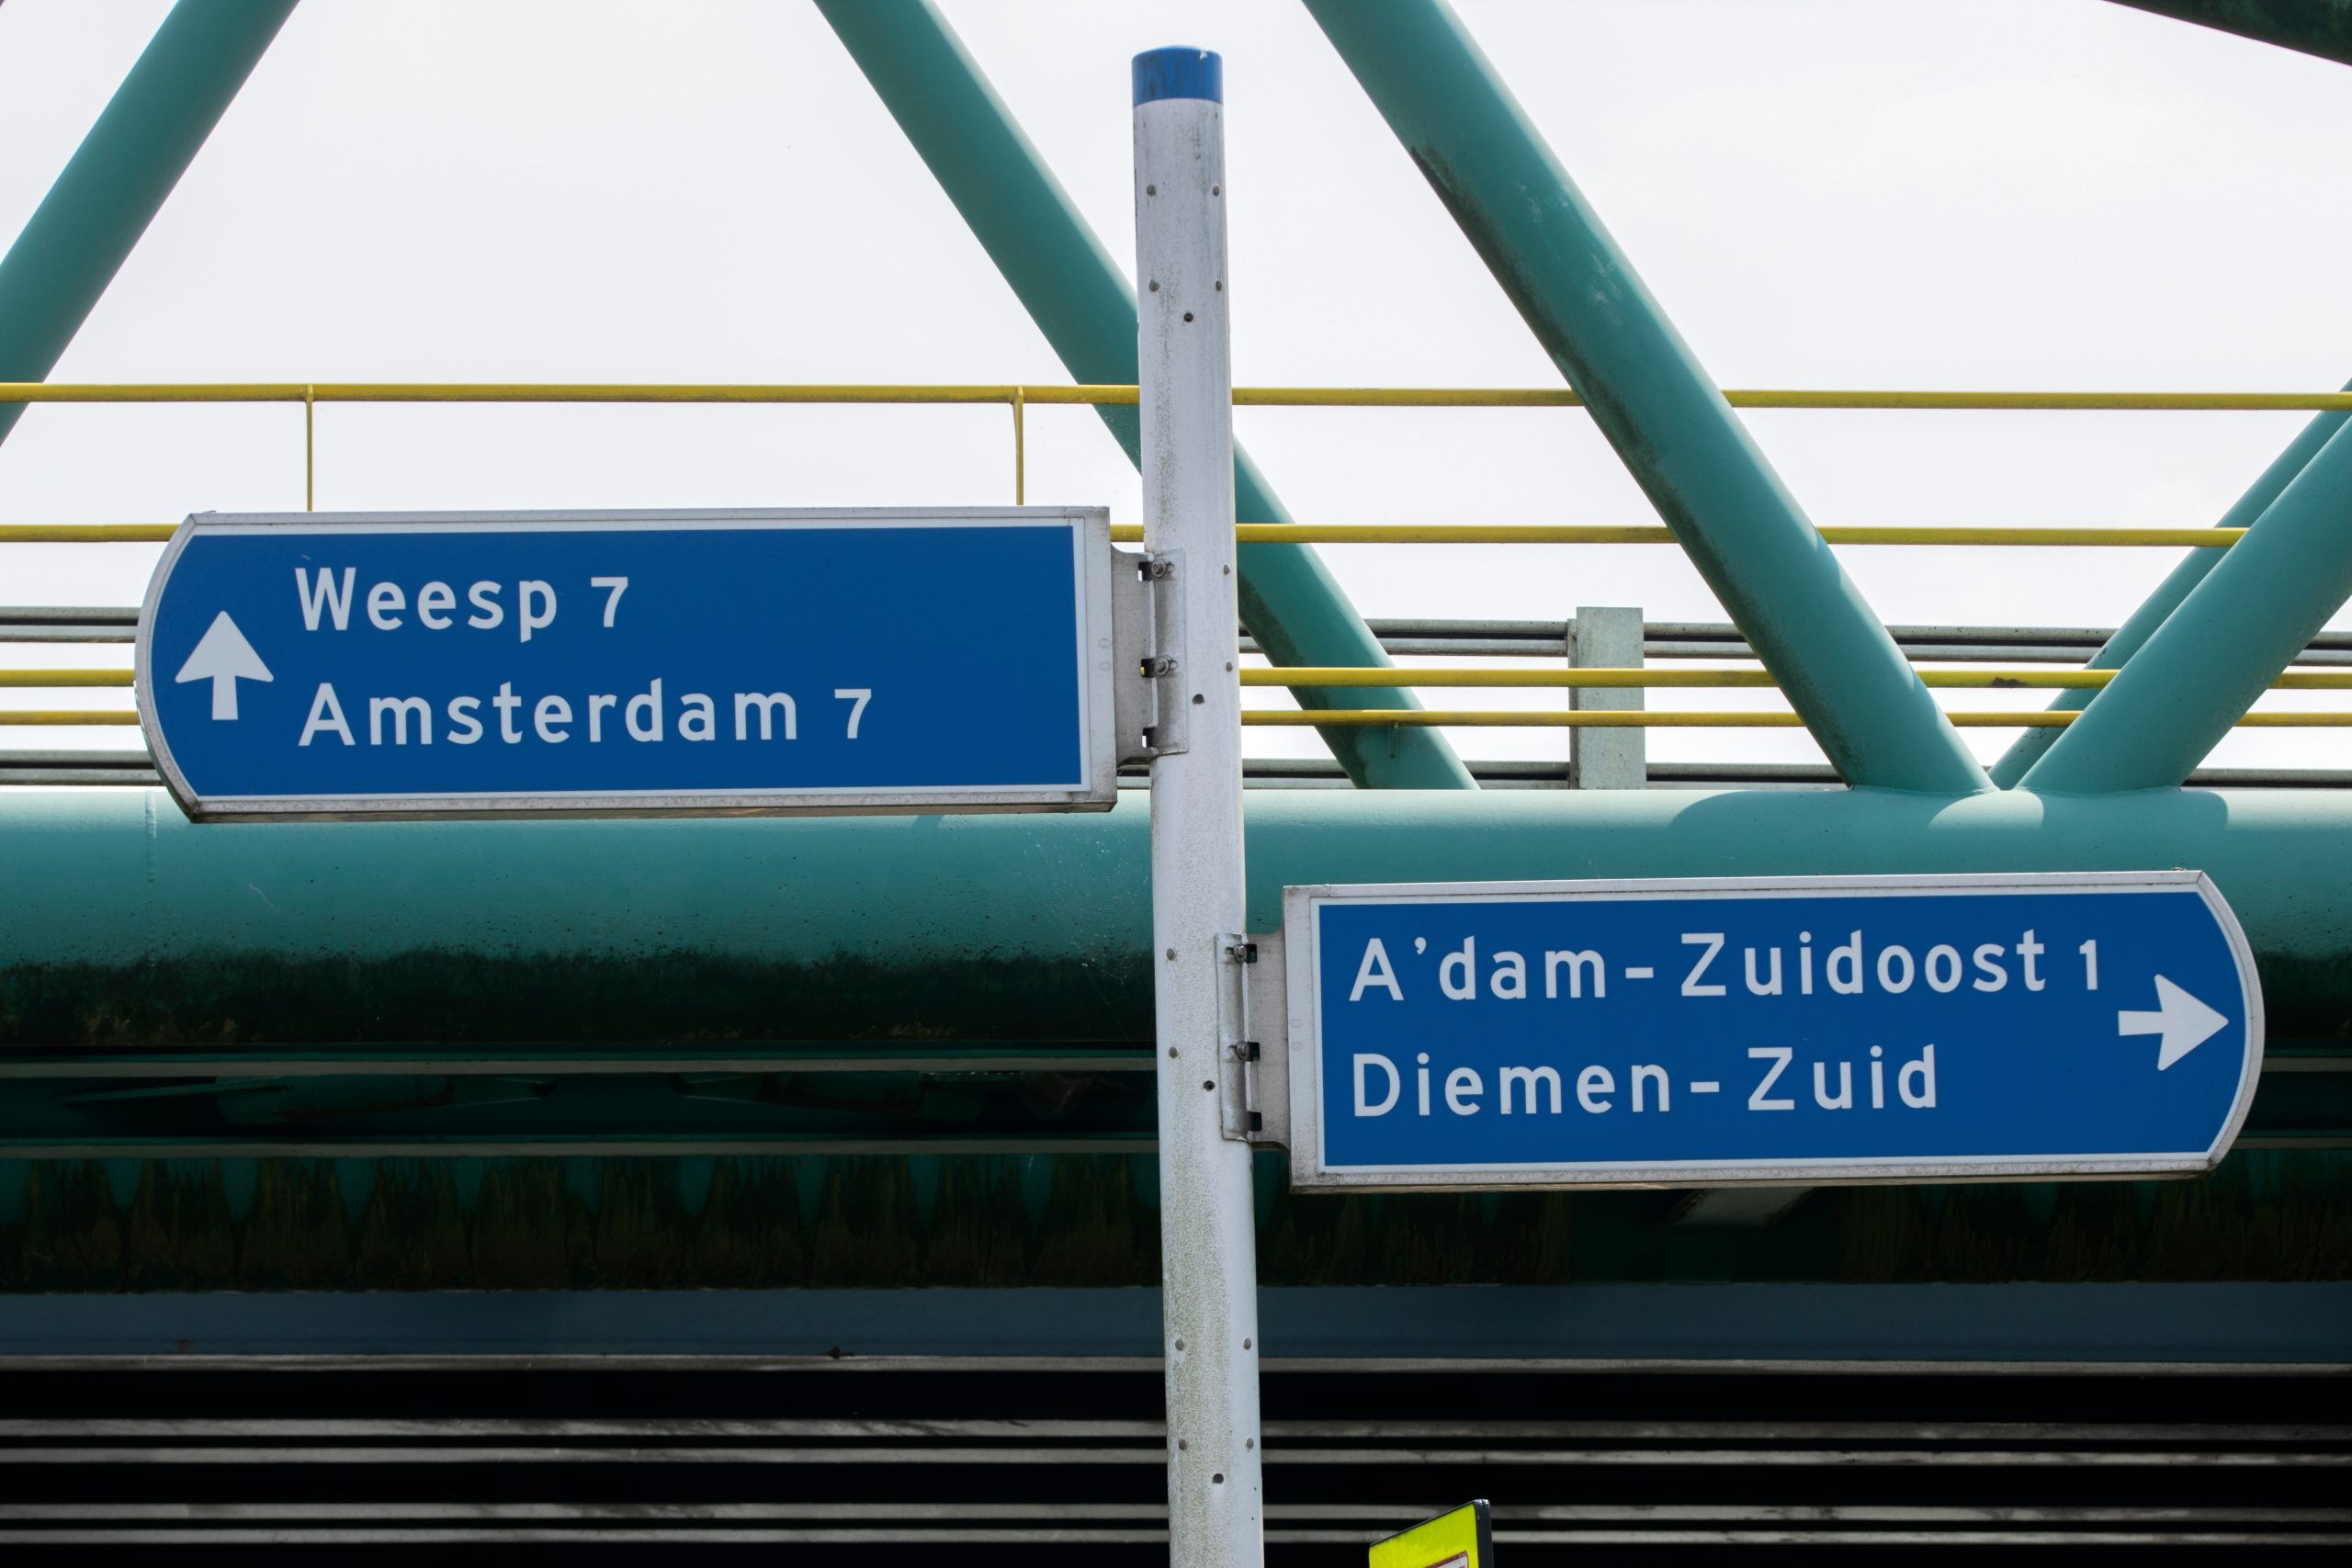 Diemen boos over golf van sluipverkeer door wegwerk Amsterdam: ‘Niet overlegd’ – Mobiliteit